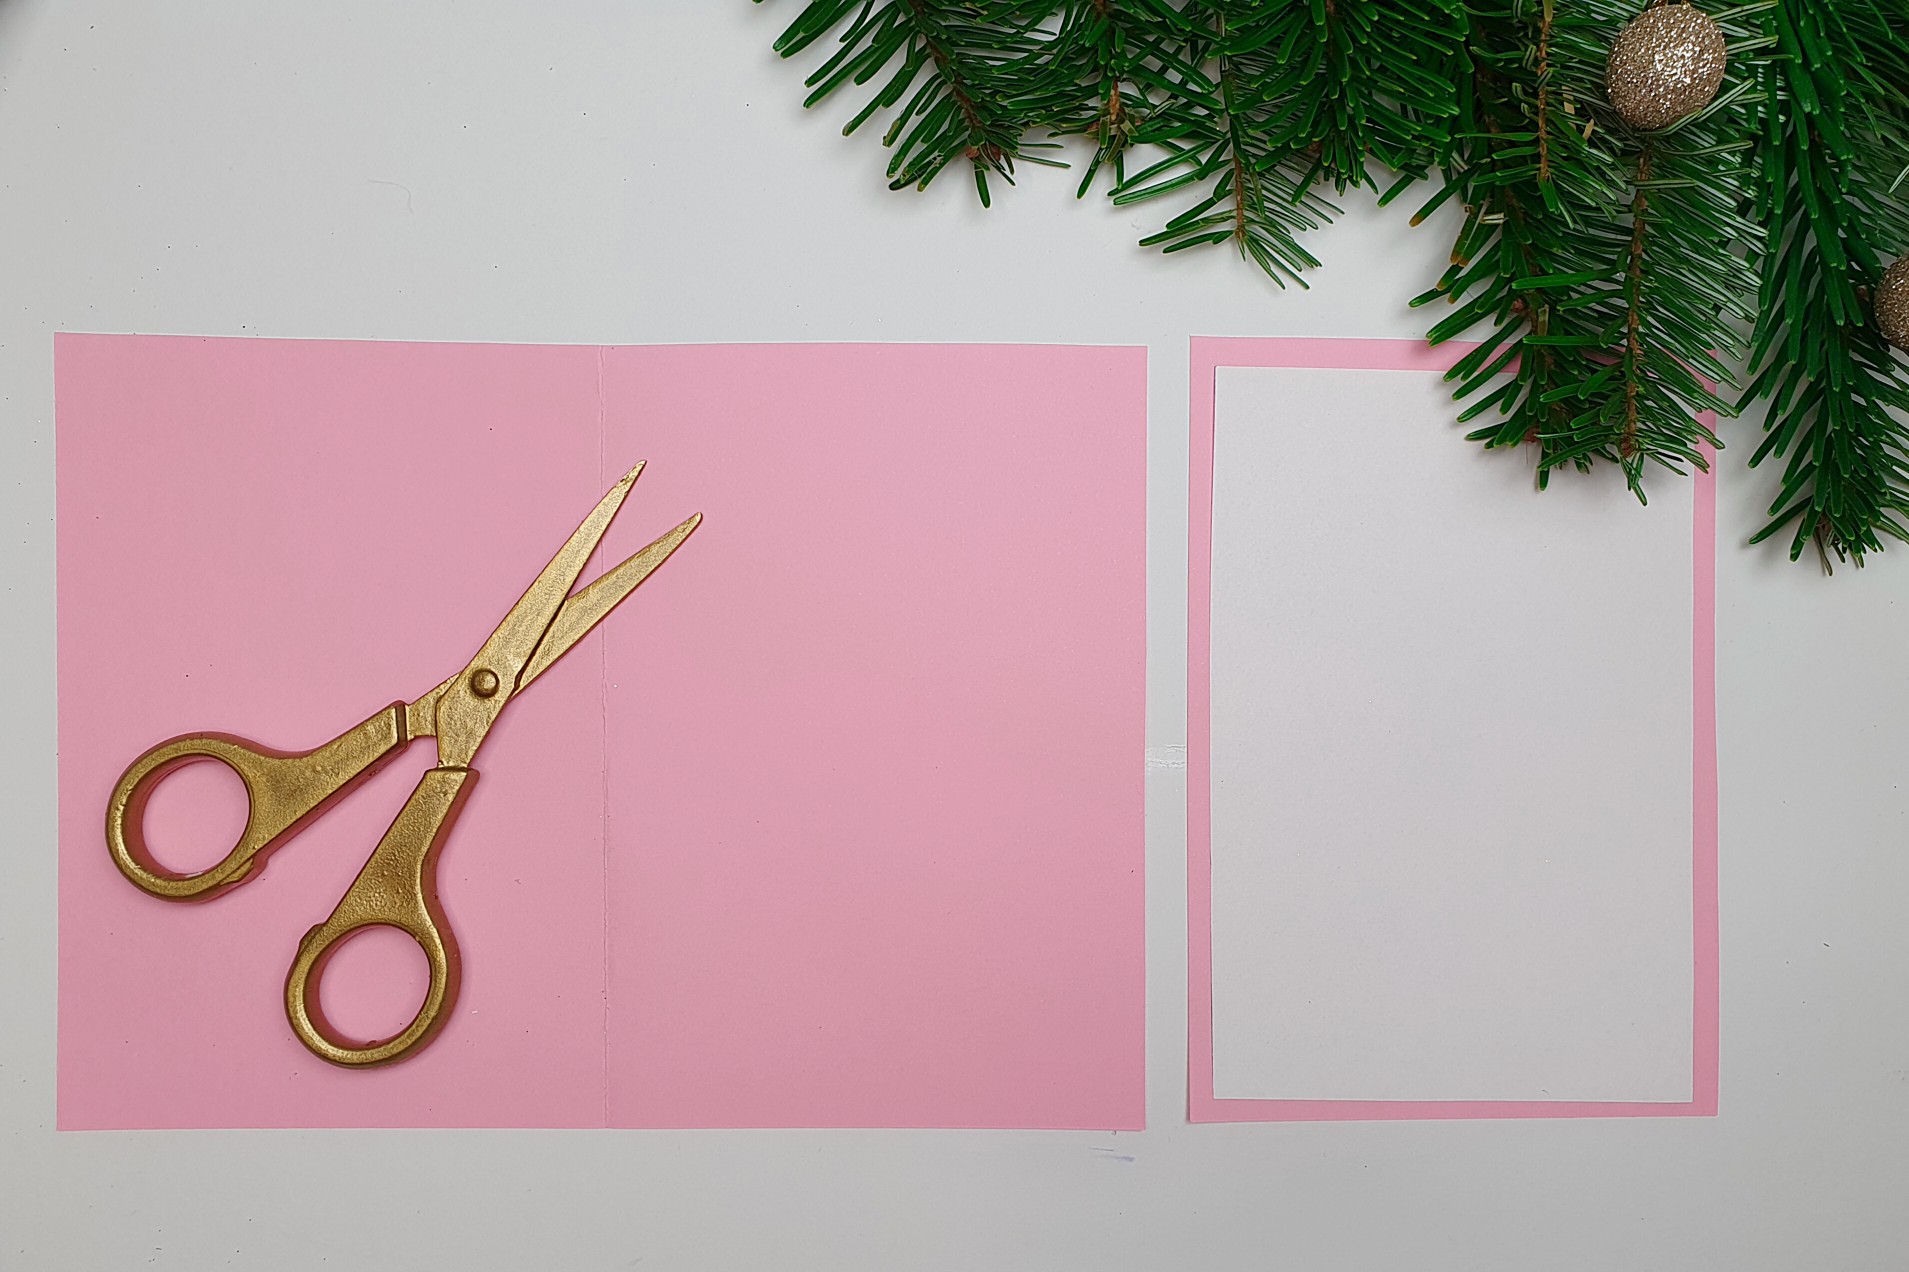 Tonpapier wird in der mitte gefaltet um eine DIY 3D Weihnachtskarte selber zu machen